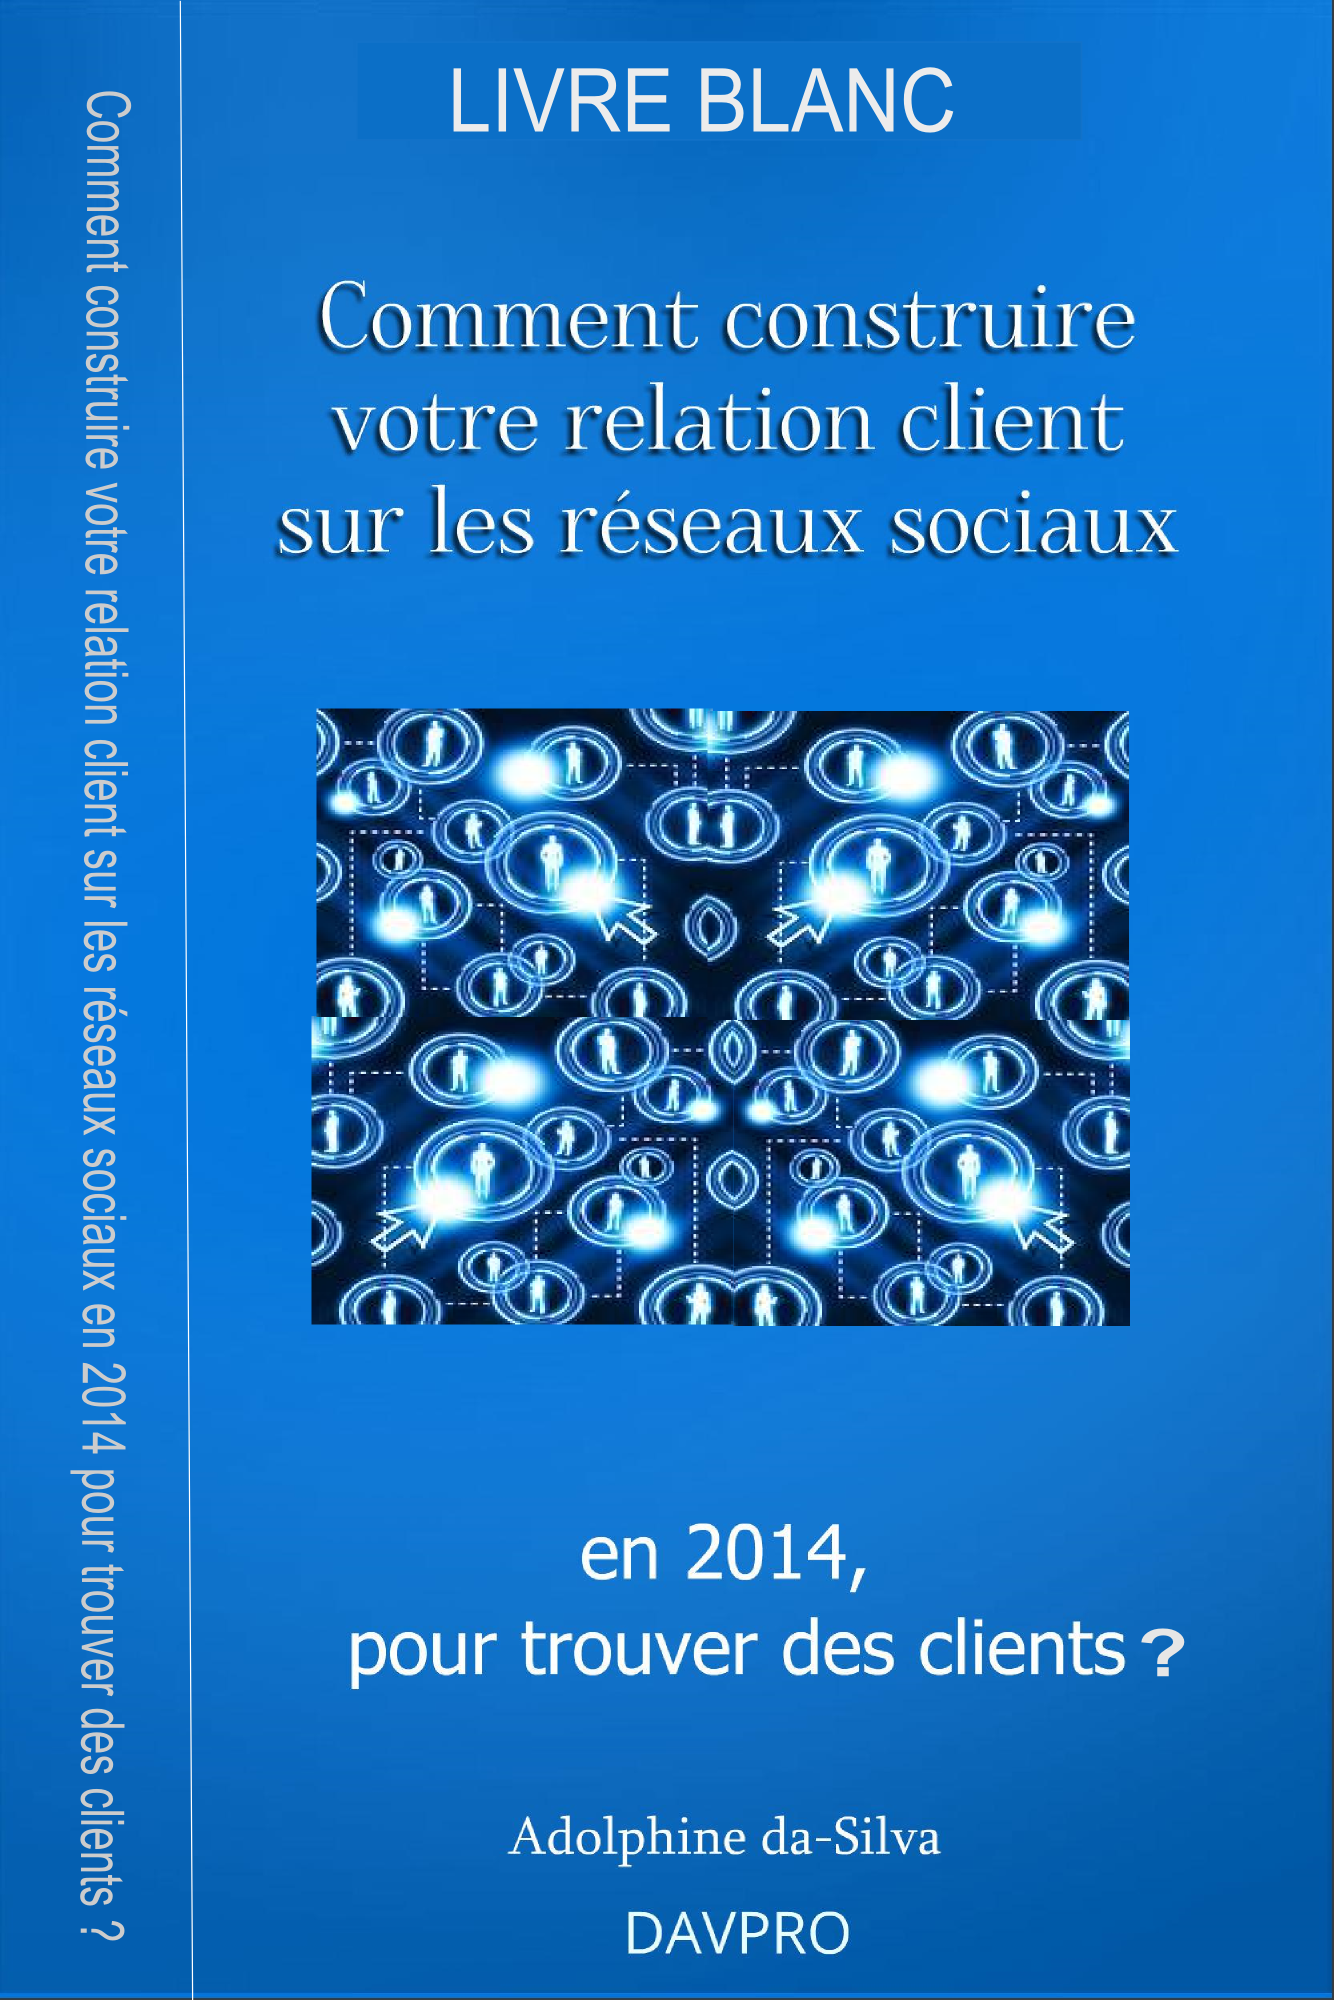 Livre blanc – Comment construire votre relation client sur les réseaux sociaux en 2014, pour trouver des clients ?